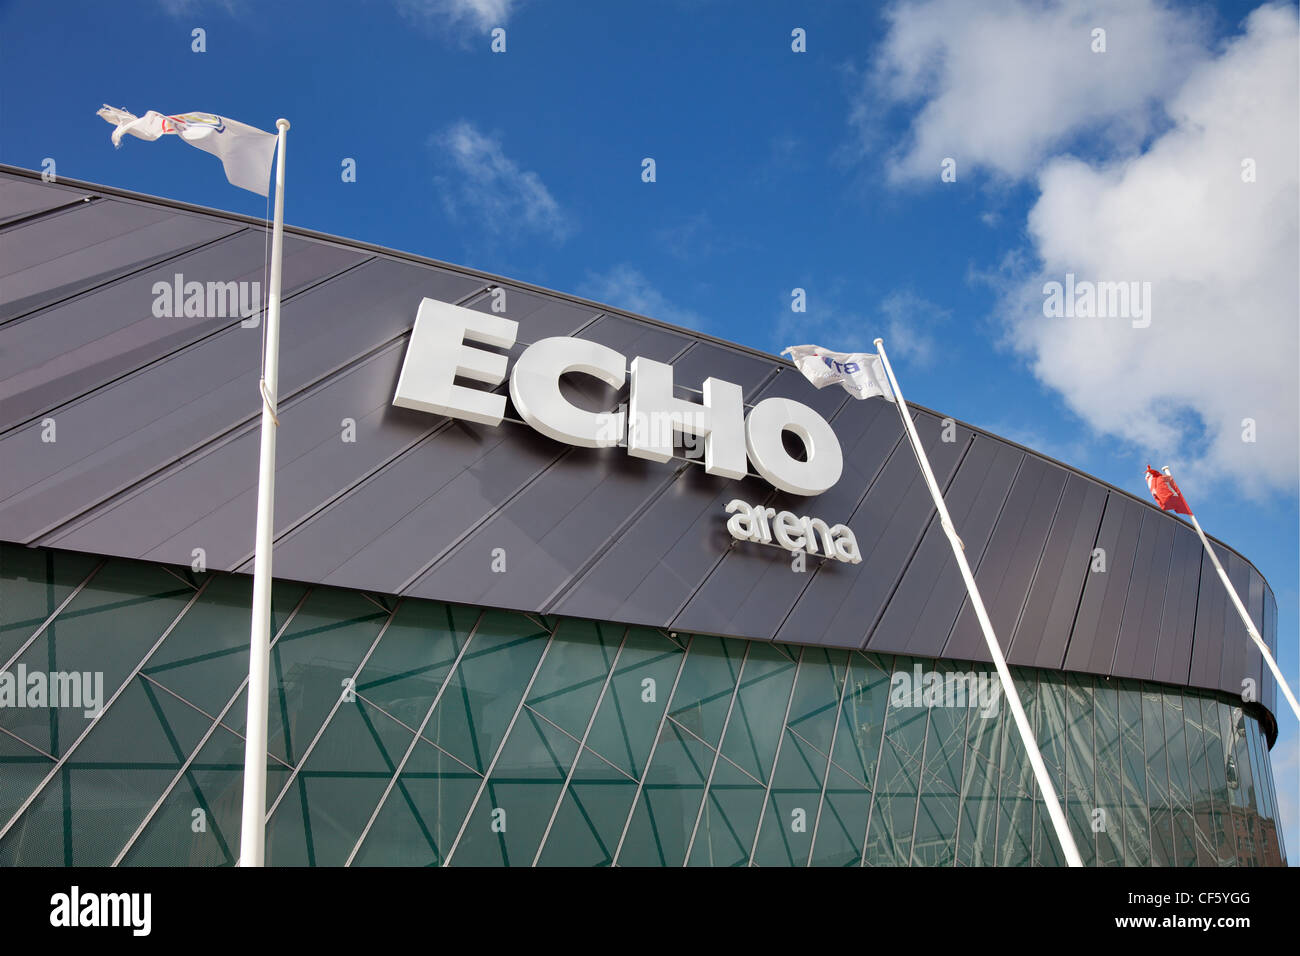 L'Echo Arena, d'une capacité de 11 000 lieux sur la rive est de la rivière Mersey, dans le coeur du centre-ville. Banque D'Images